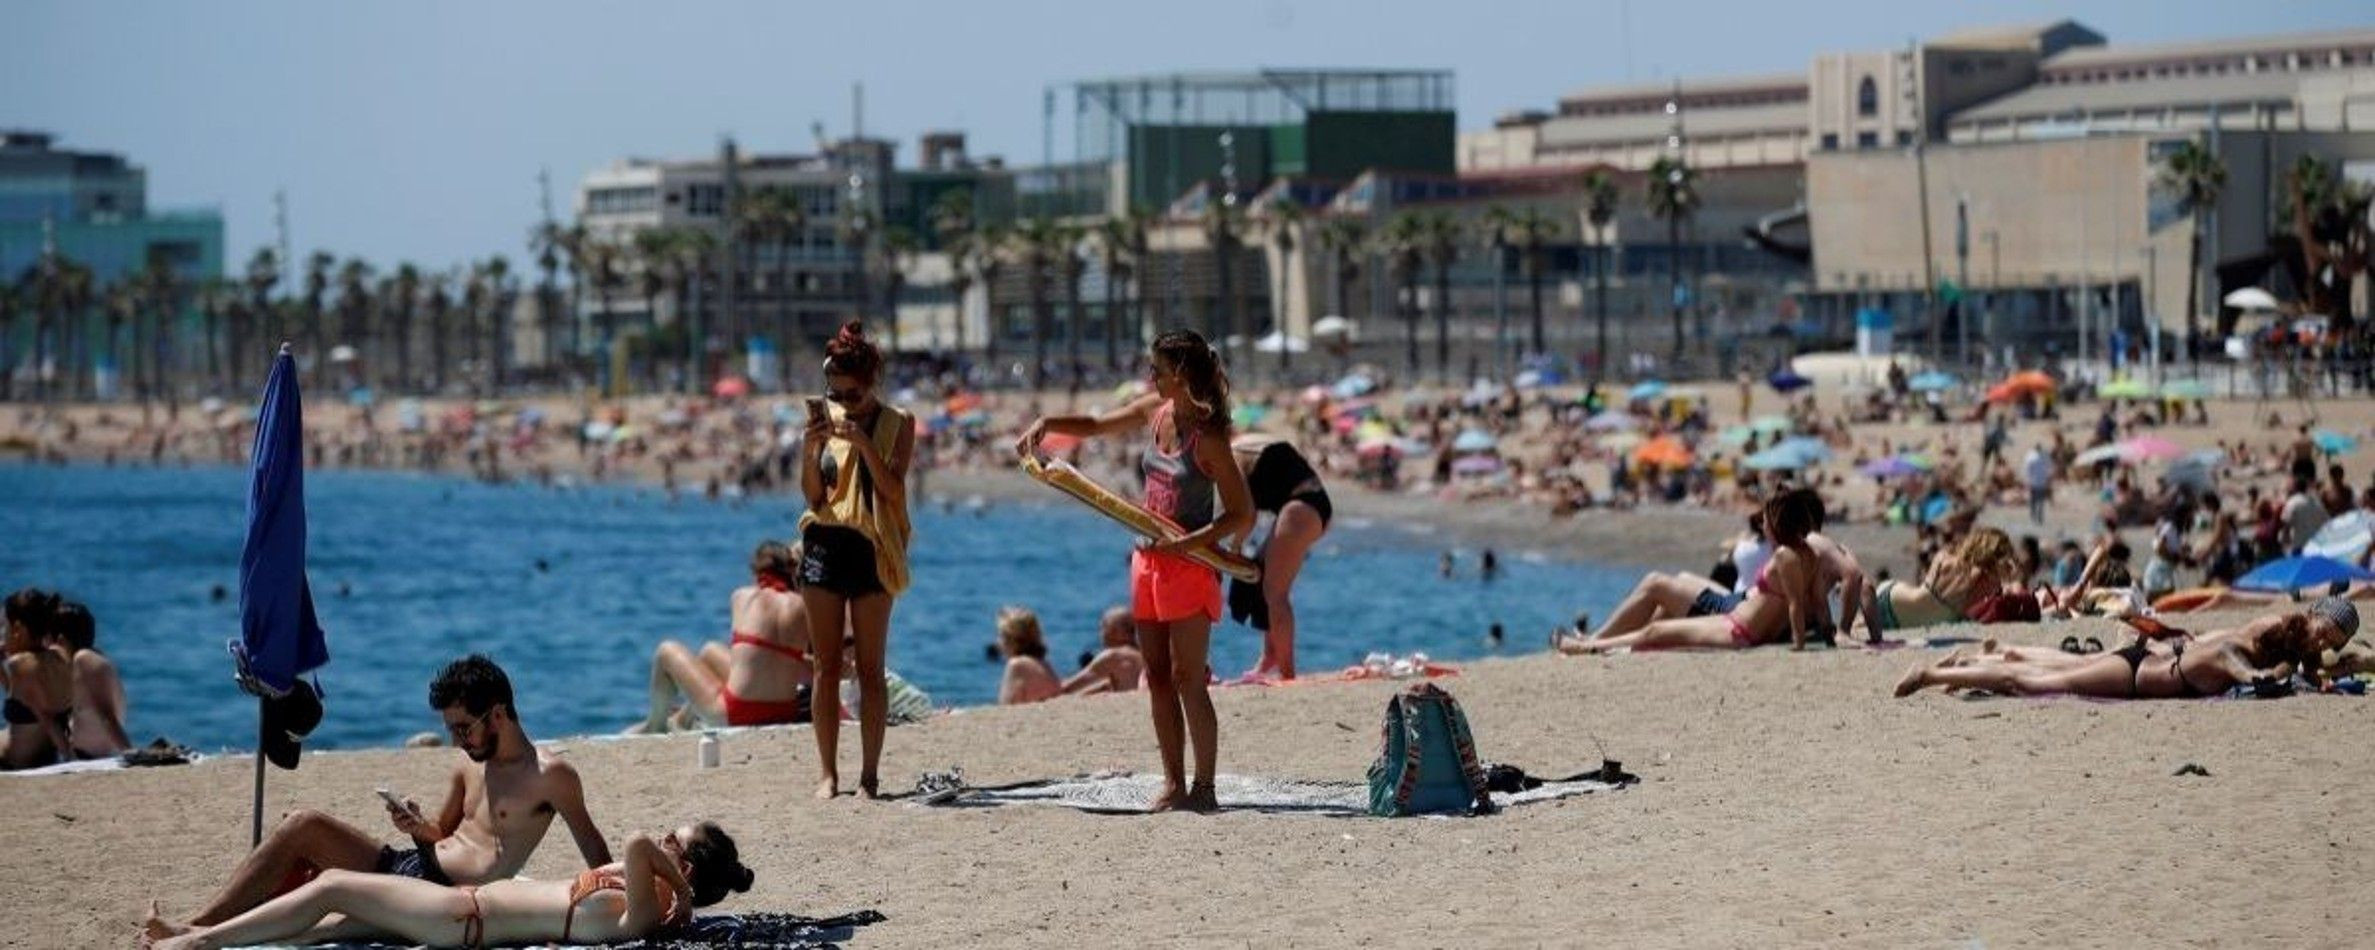 Bañistas en una playa de Barcelona / EFE